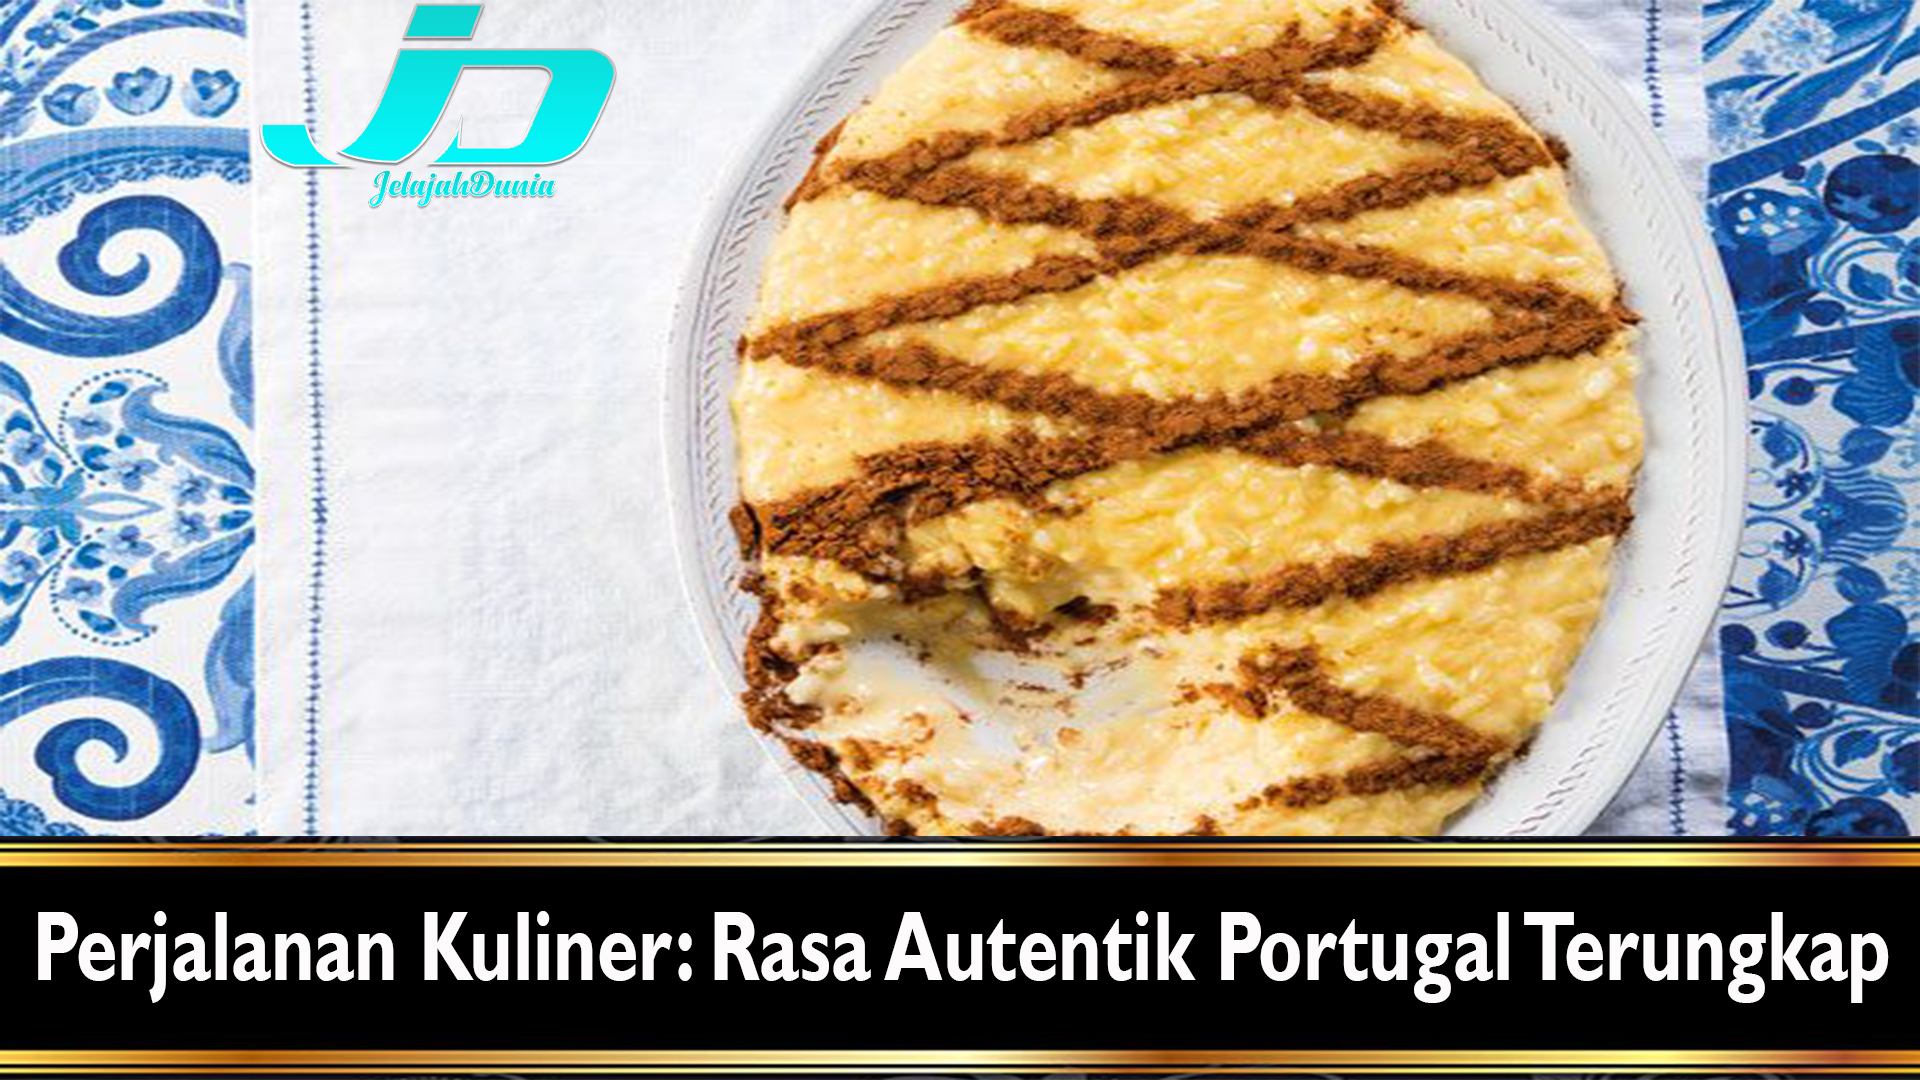 Perjalanan Kuliner: Rasa Autentik Portugal Terungkap